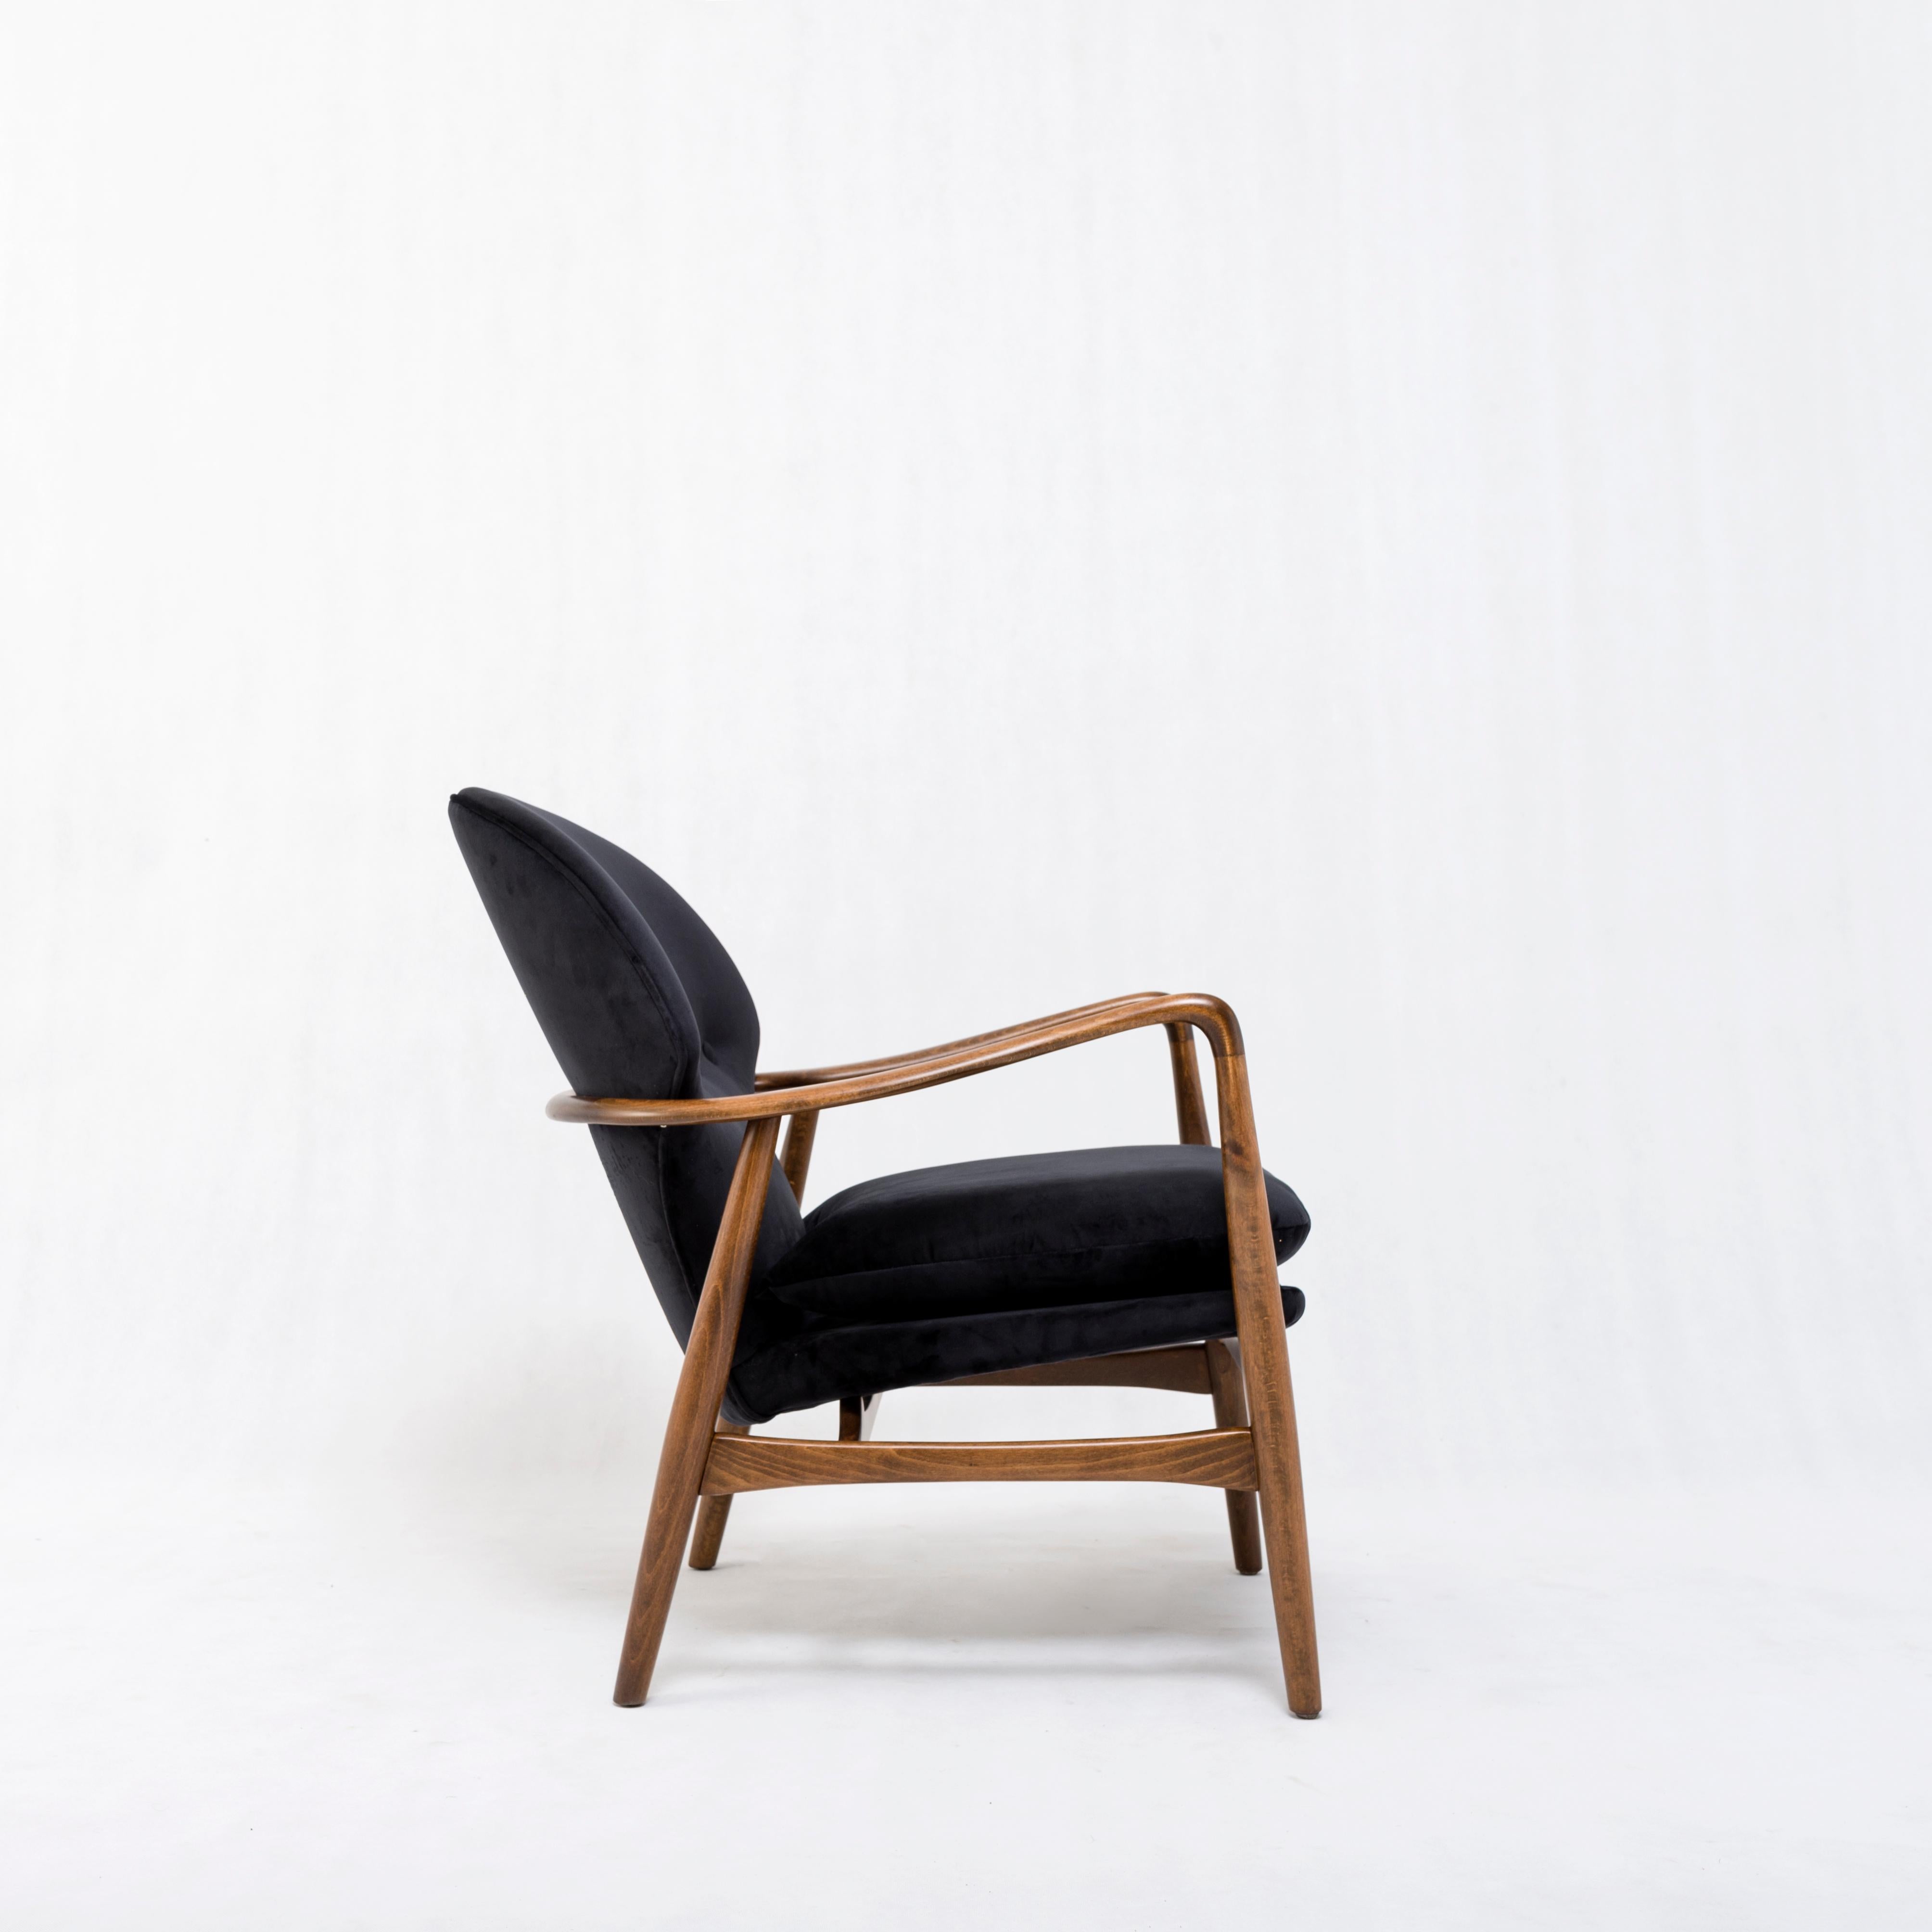 Midcentury armchair, reupholstered in black velvet
Probably Scandinavia, 1950s.